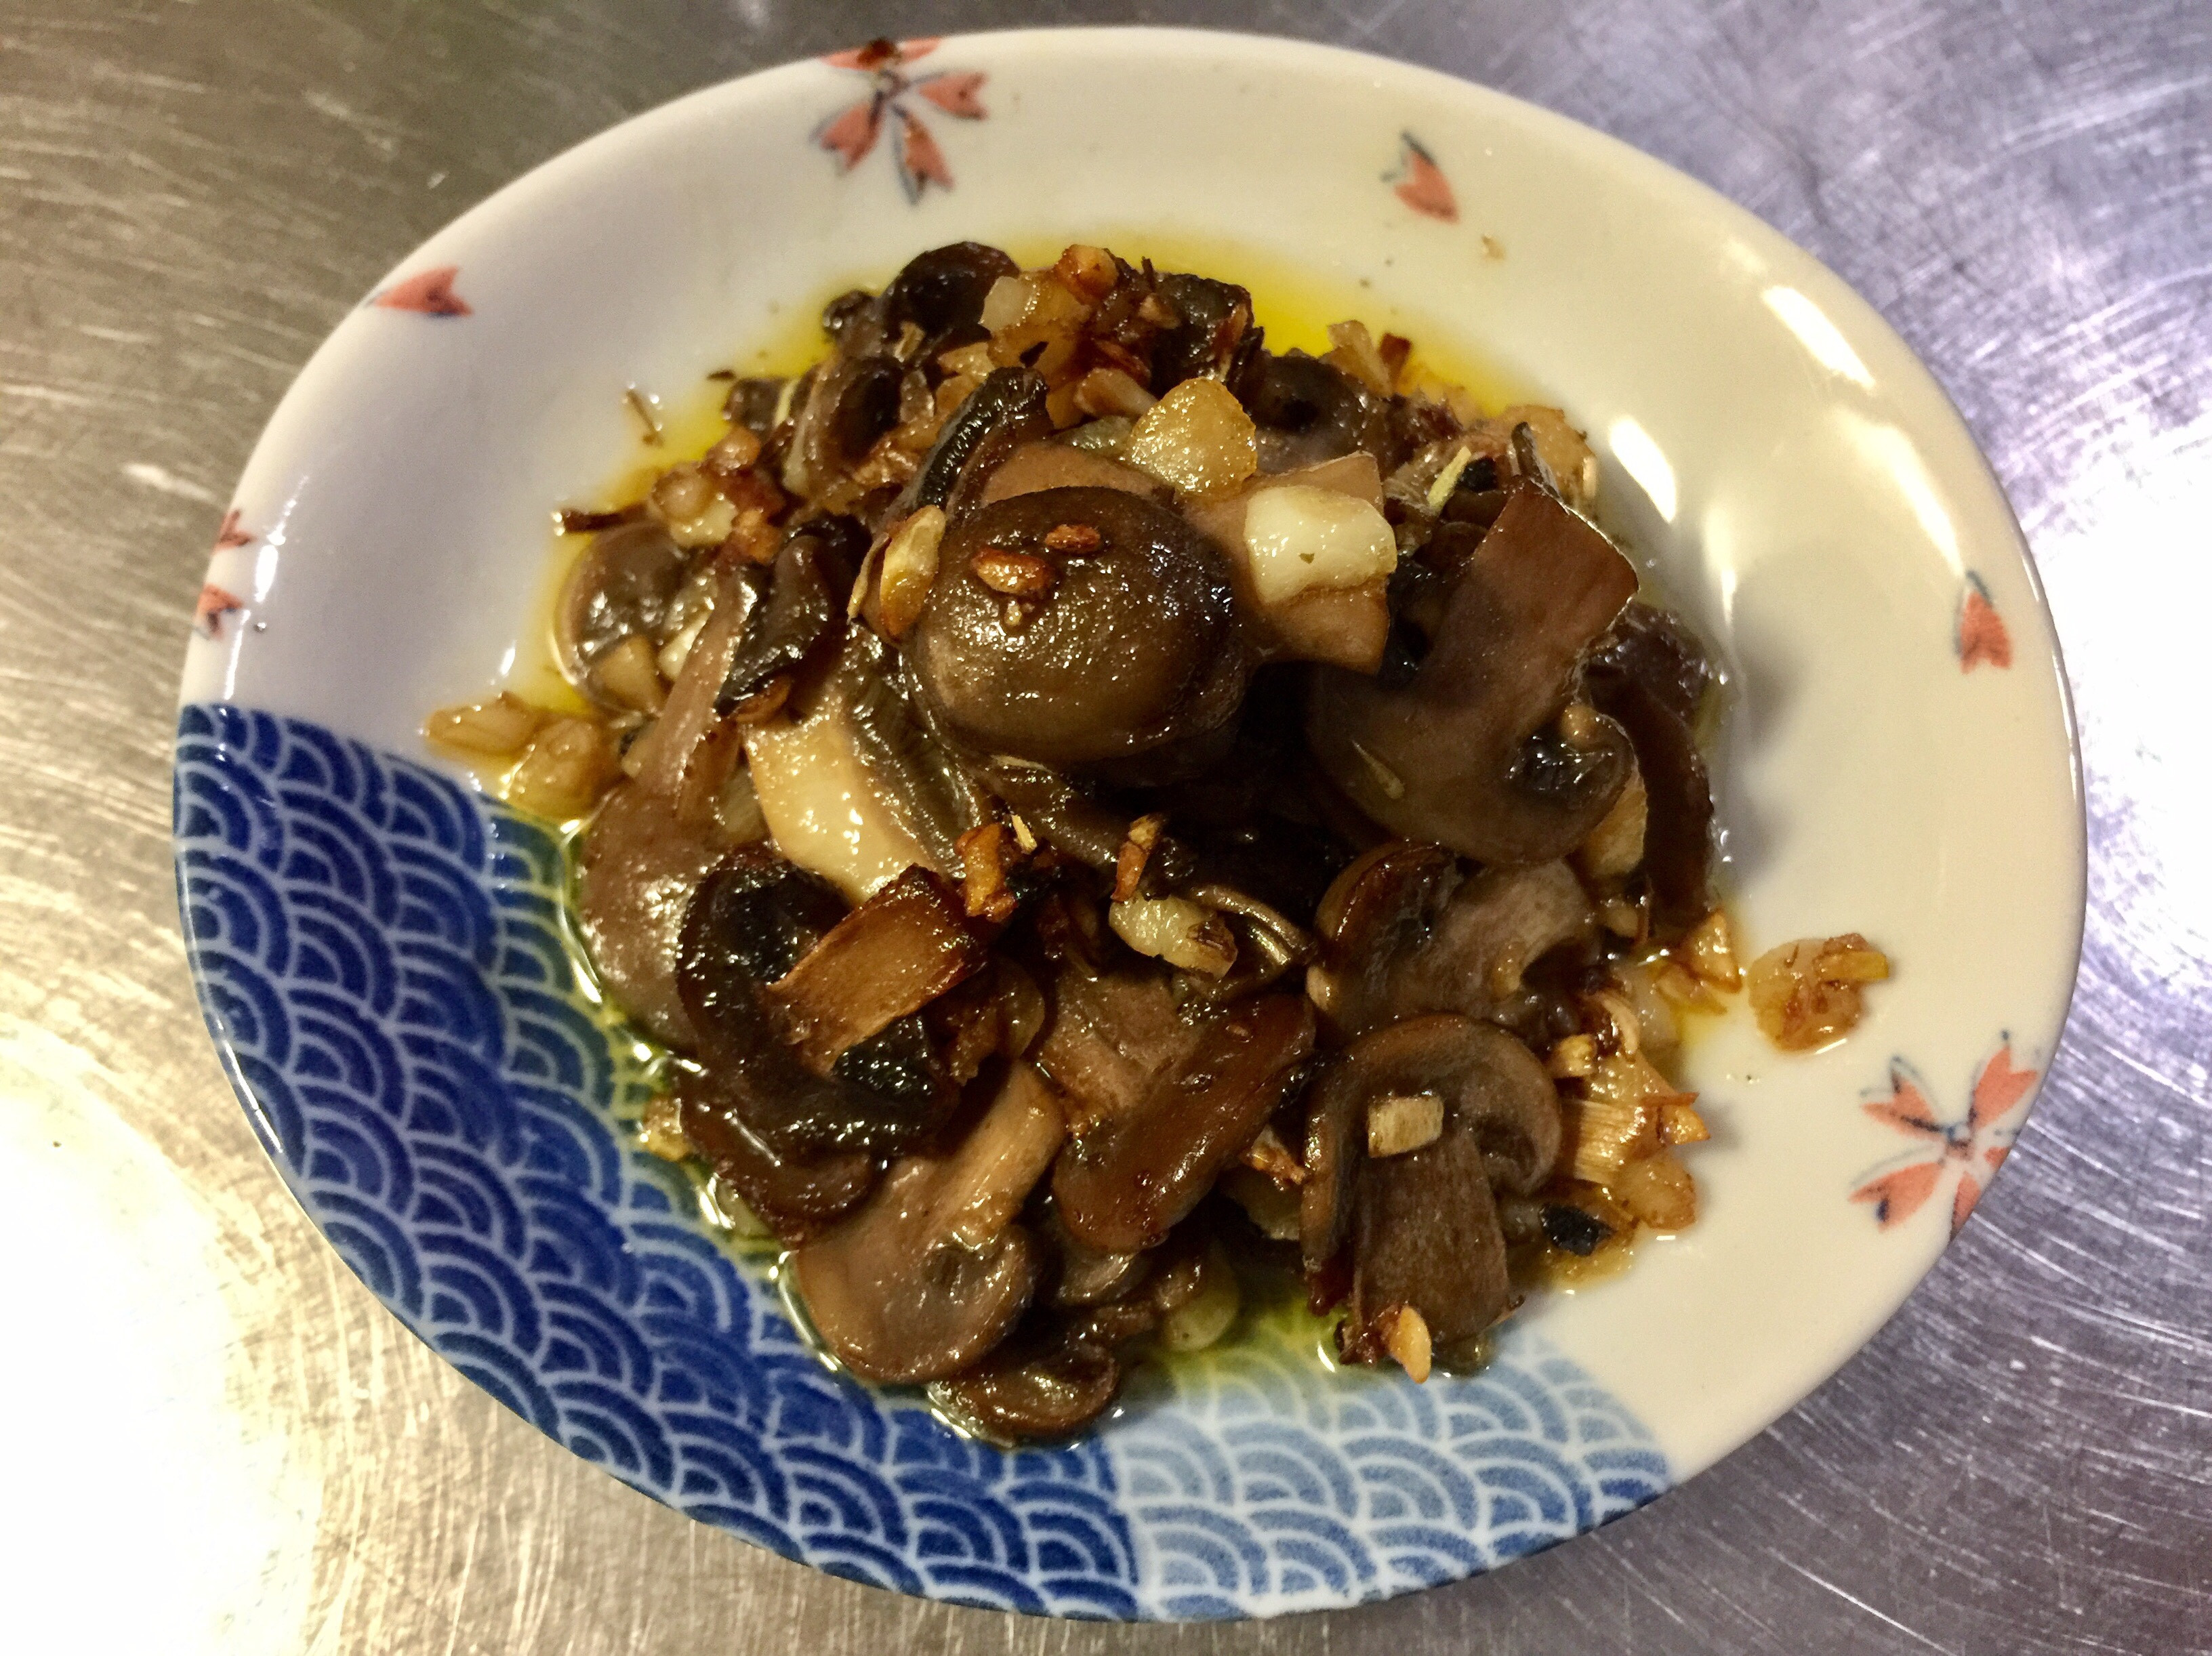 海明威煎蘑菇(西班牙风味)的做法_海明威煎蘑菇(西班牙风味)怎么做_海明威煎蘑菇(西班牙风味)的家常做法_兔牙【心食谱】